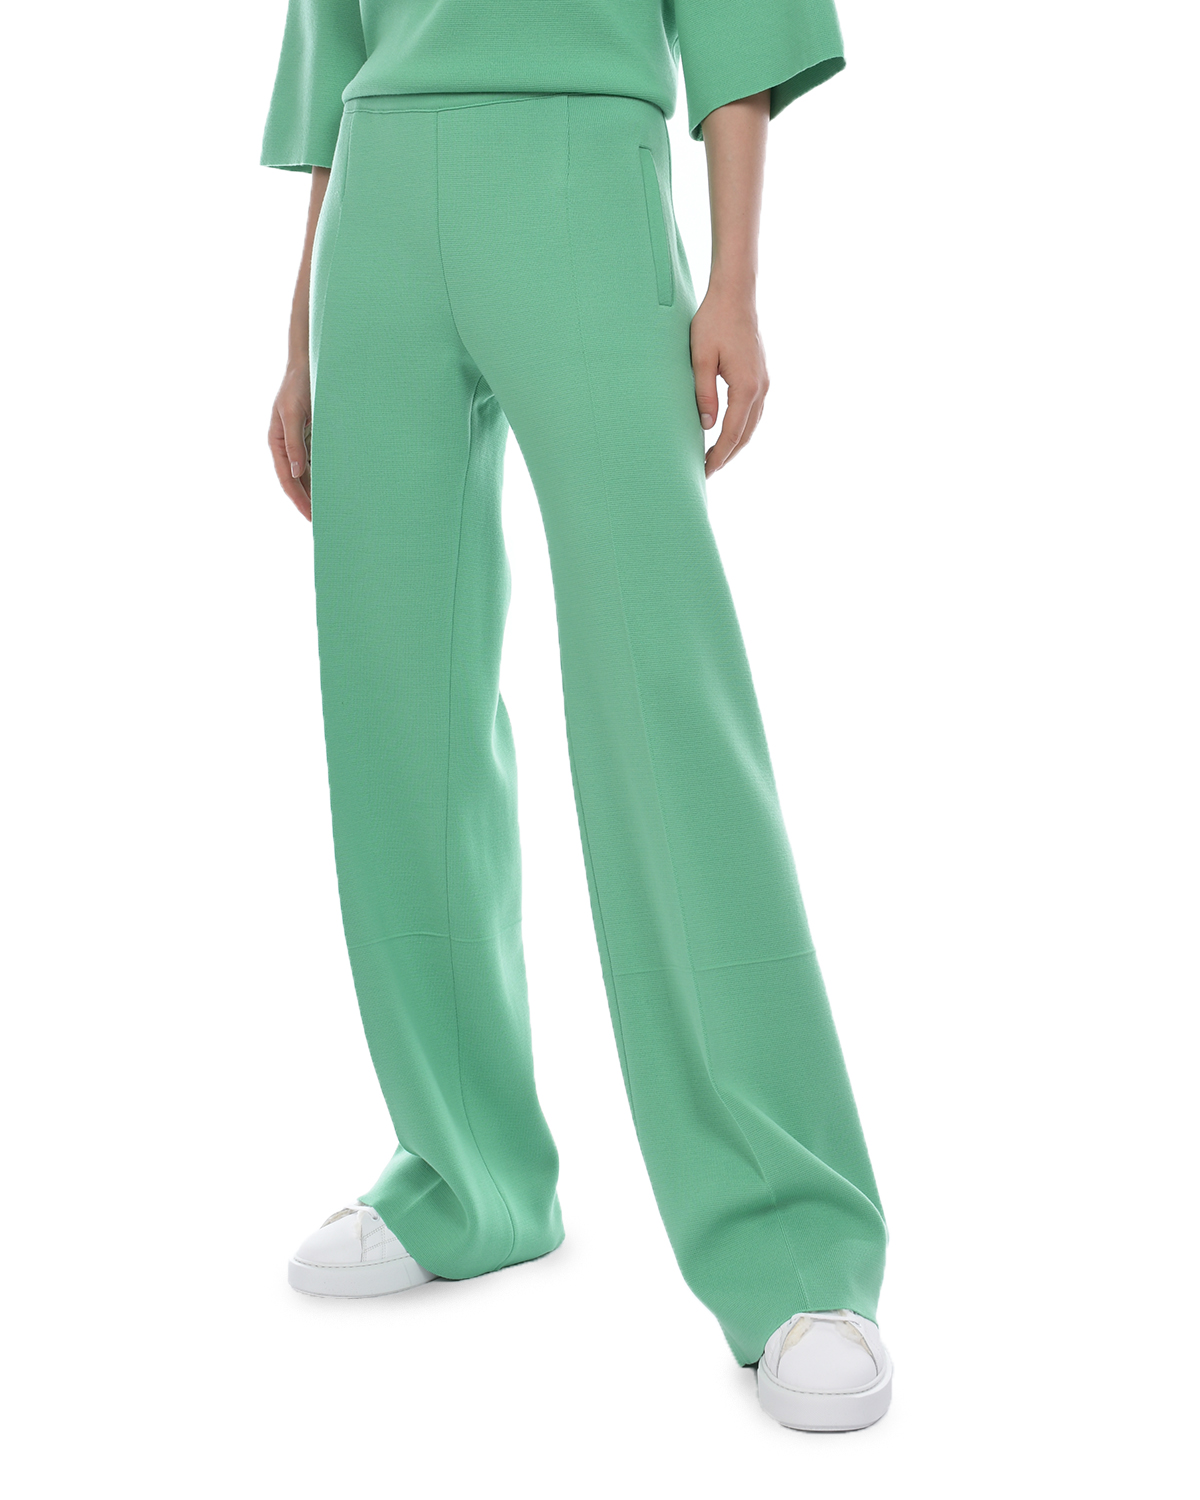 Зеленые брюки со стрелками MRZ, размер 44, цвет зеленый - фото 6